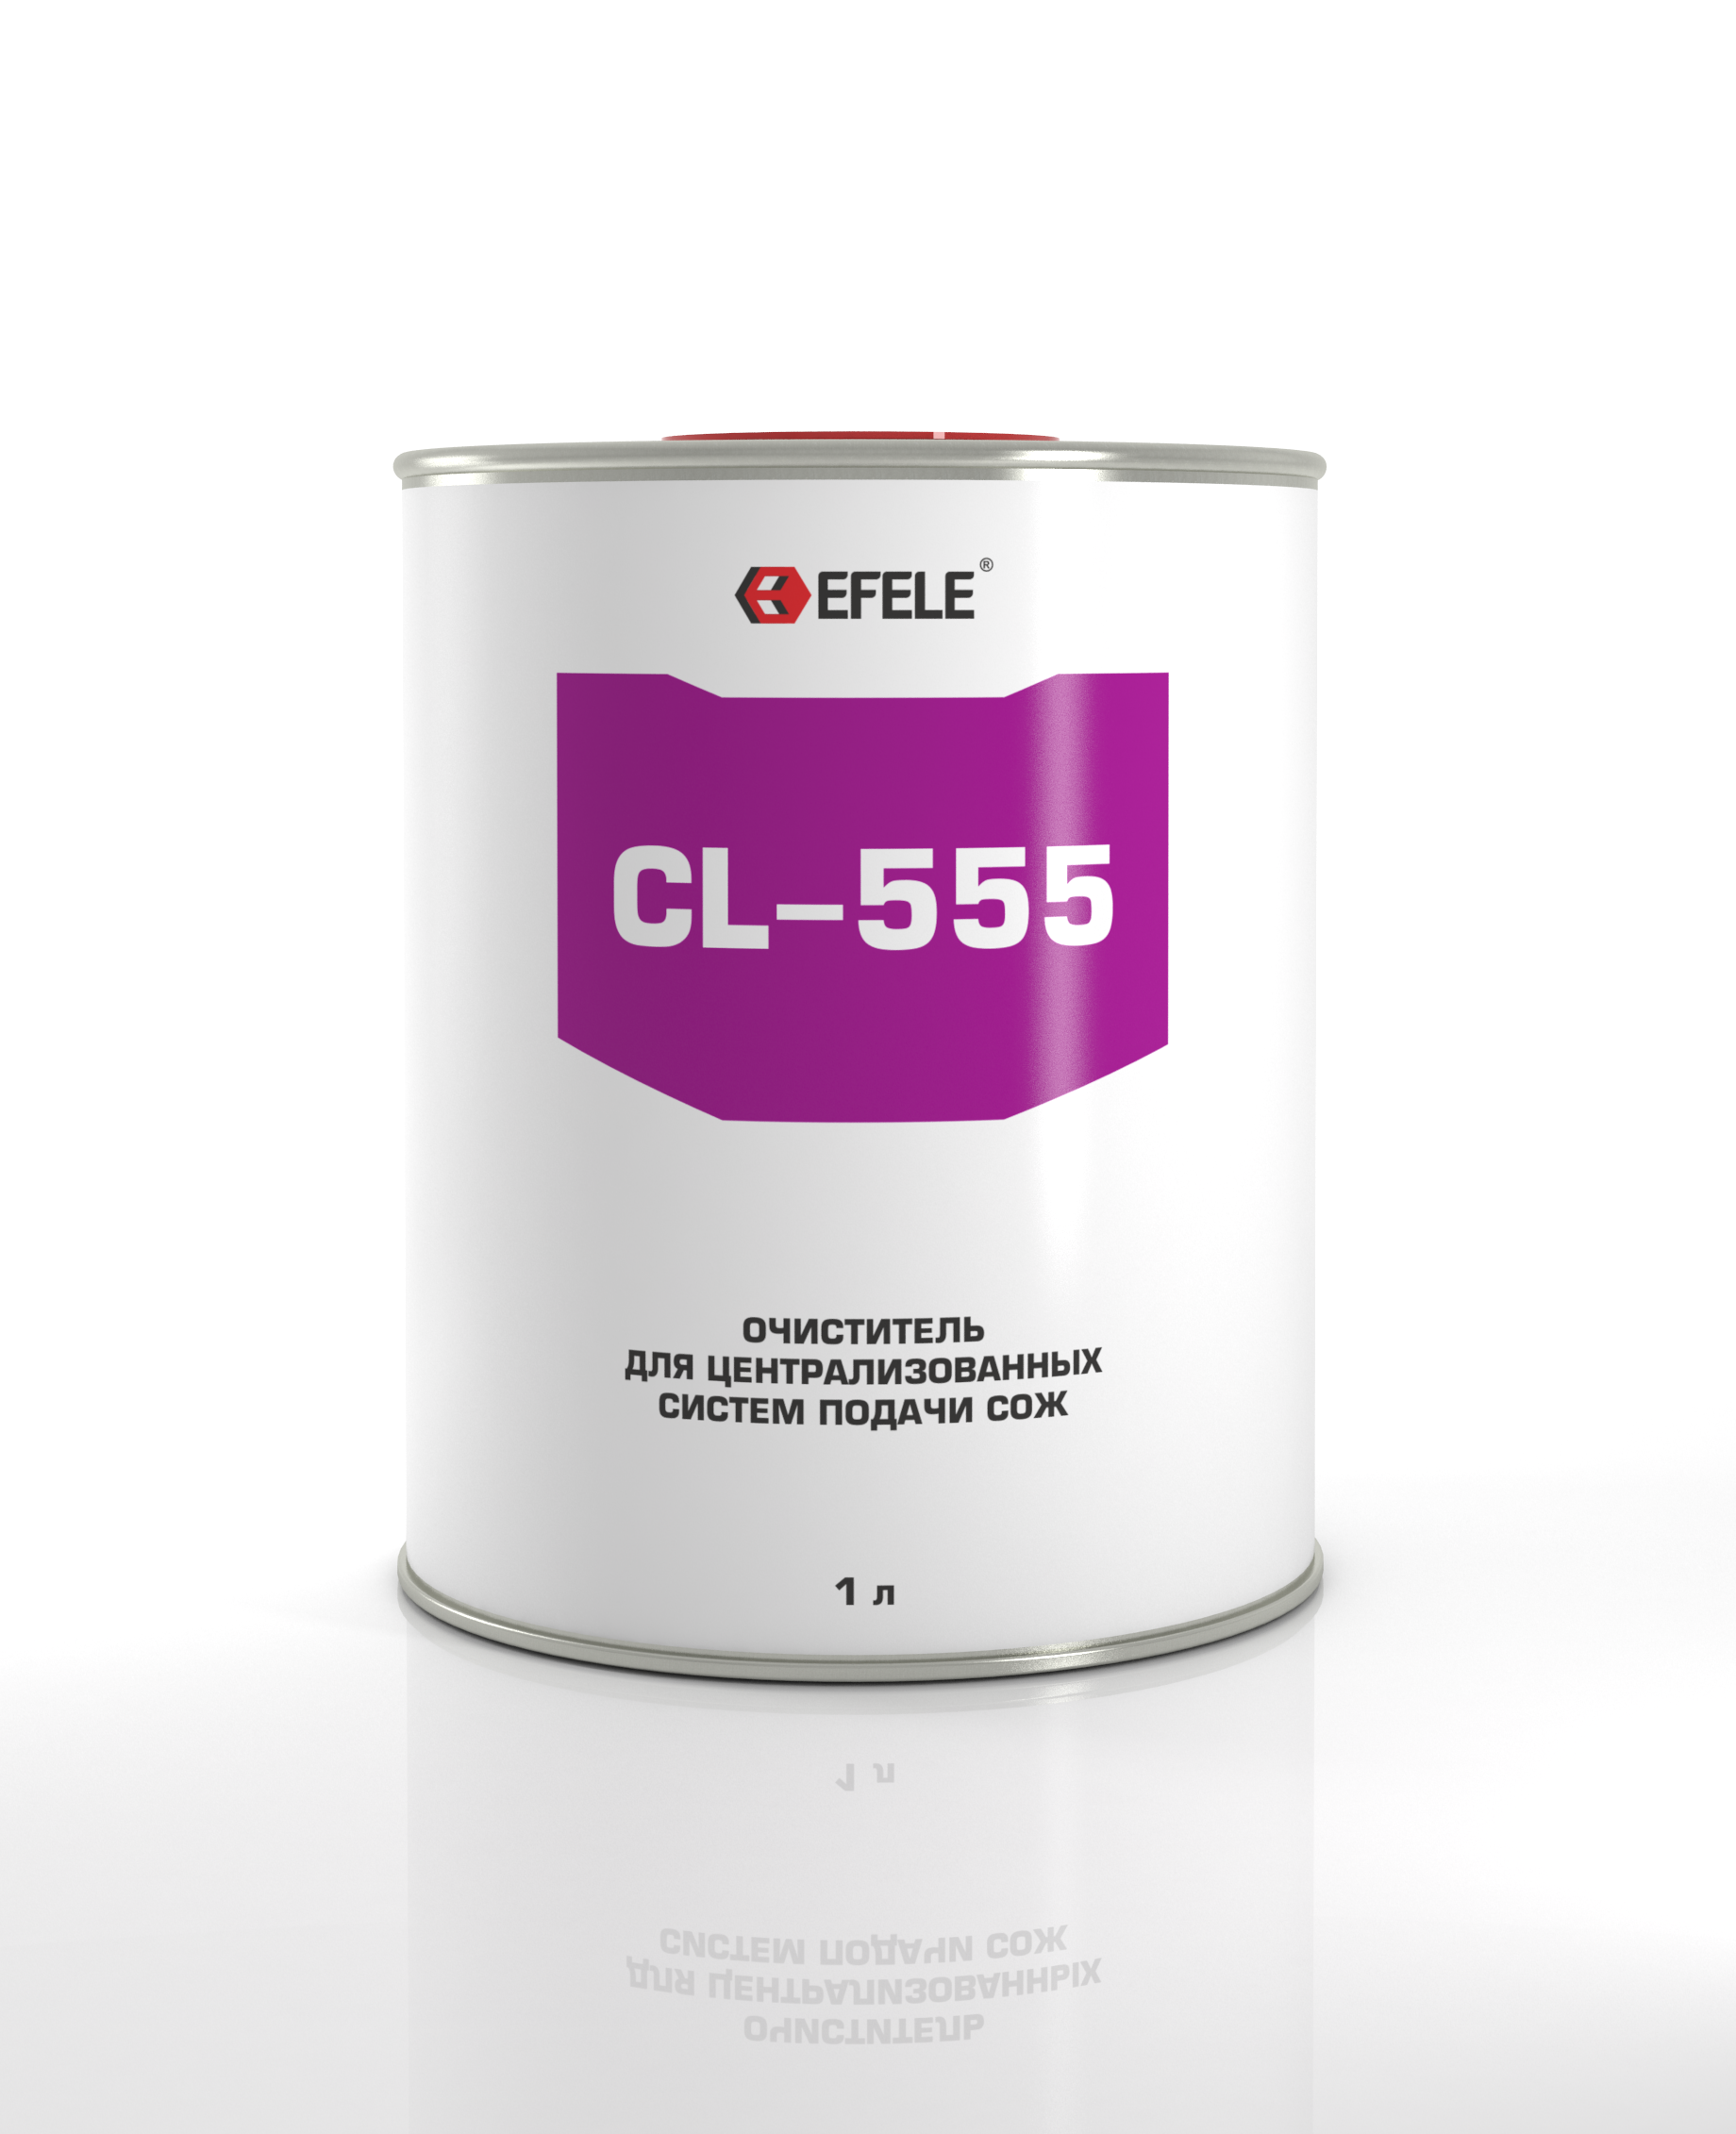 Очиститель СОЖ для систем подачи Efele cl-555 (efl0092652)